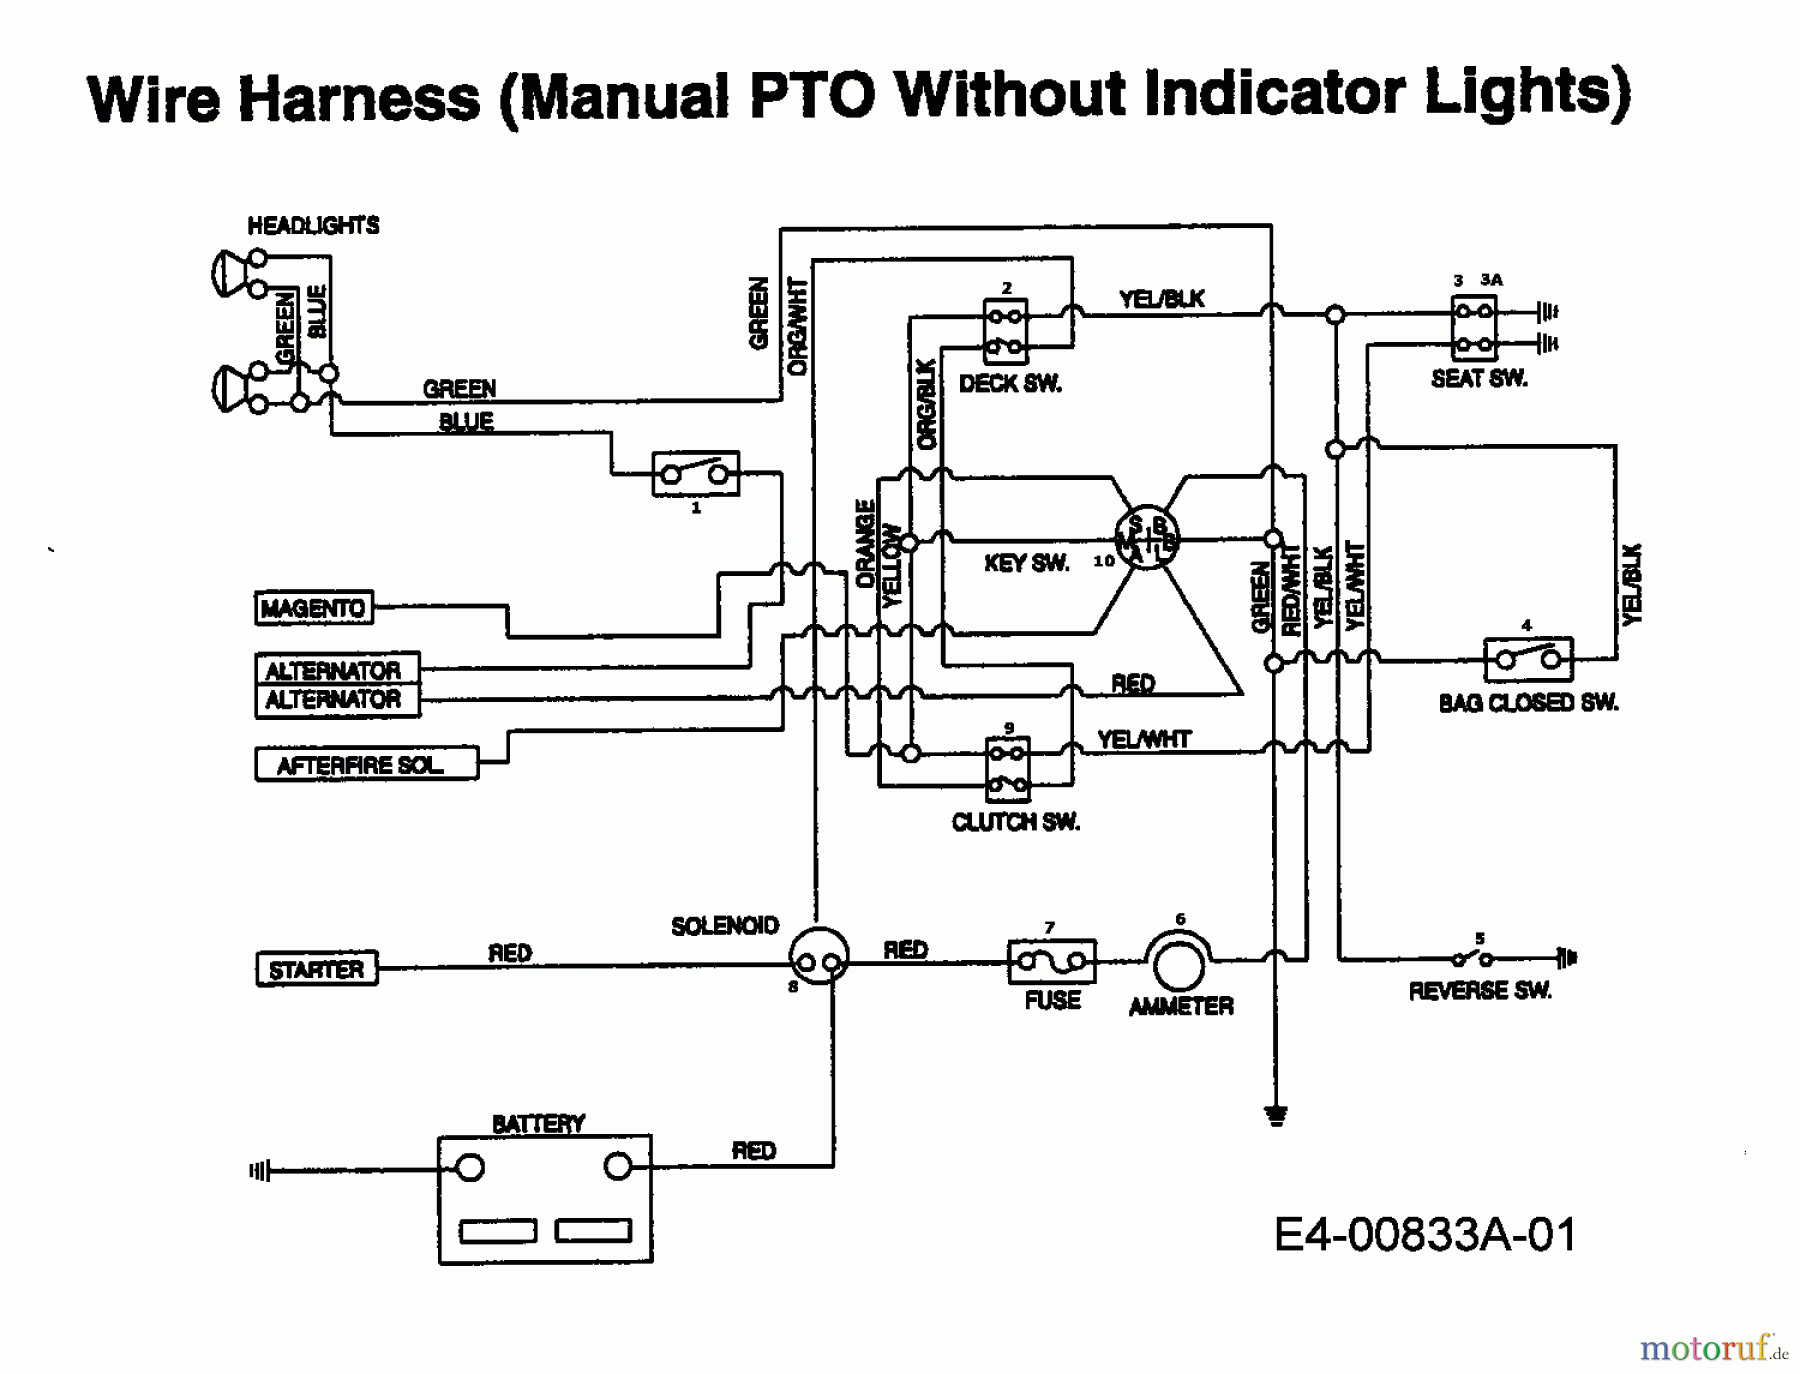  Raiffeisen Tracteurs de pelouse RMH 13-102 H 13AA793N628  (1998) Plan électrique sans lampe de contrôle